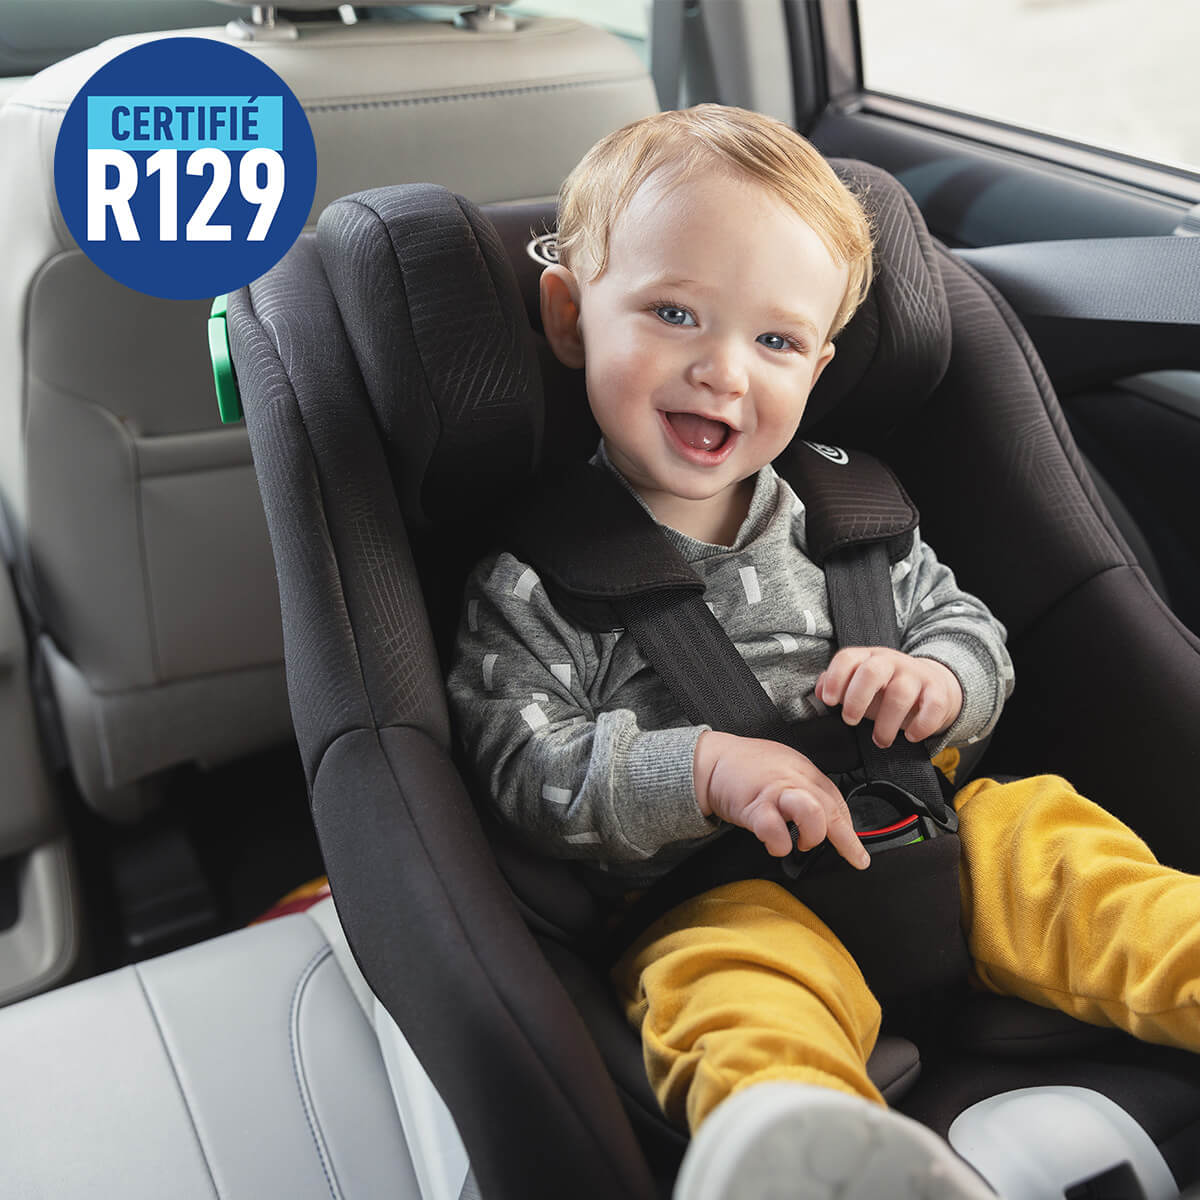 Bébé souriant en Graco Extend LX R129 dans une voiture avec logo certifié R129.